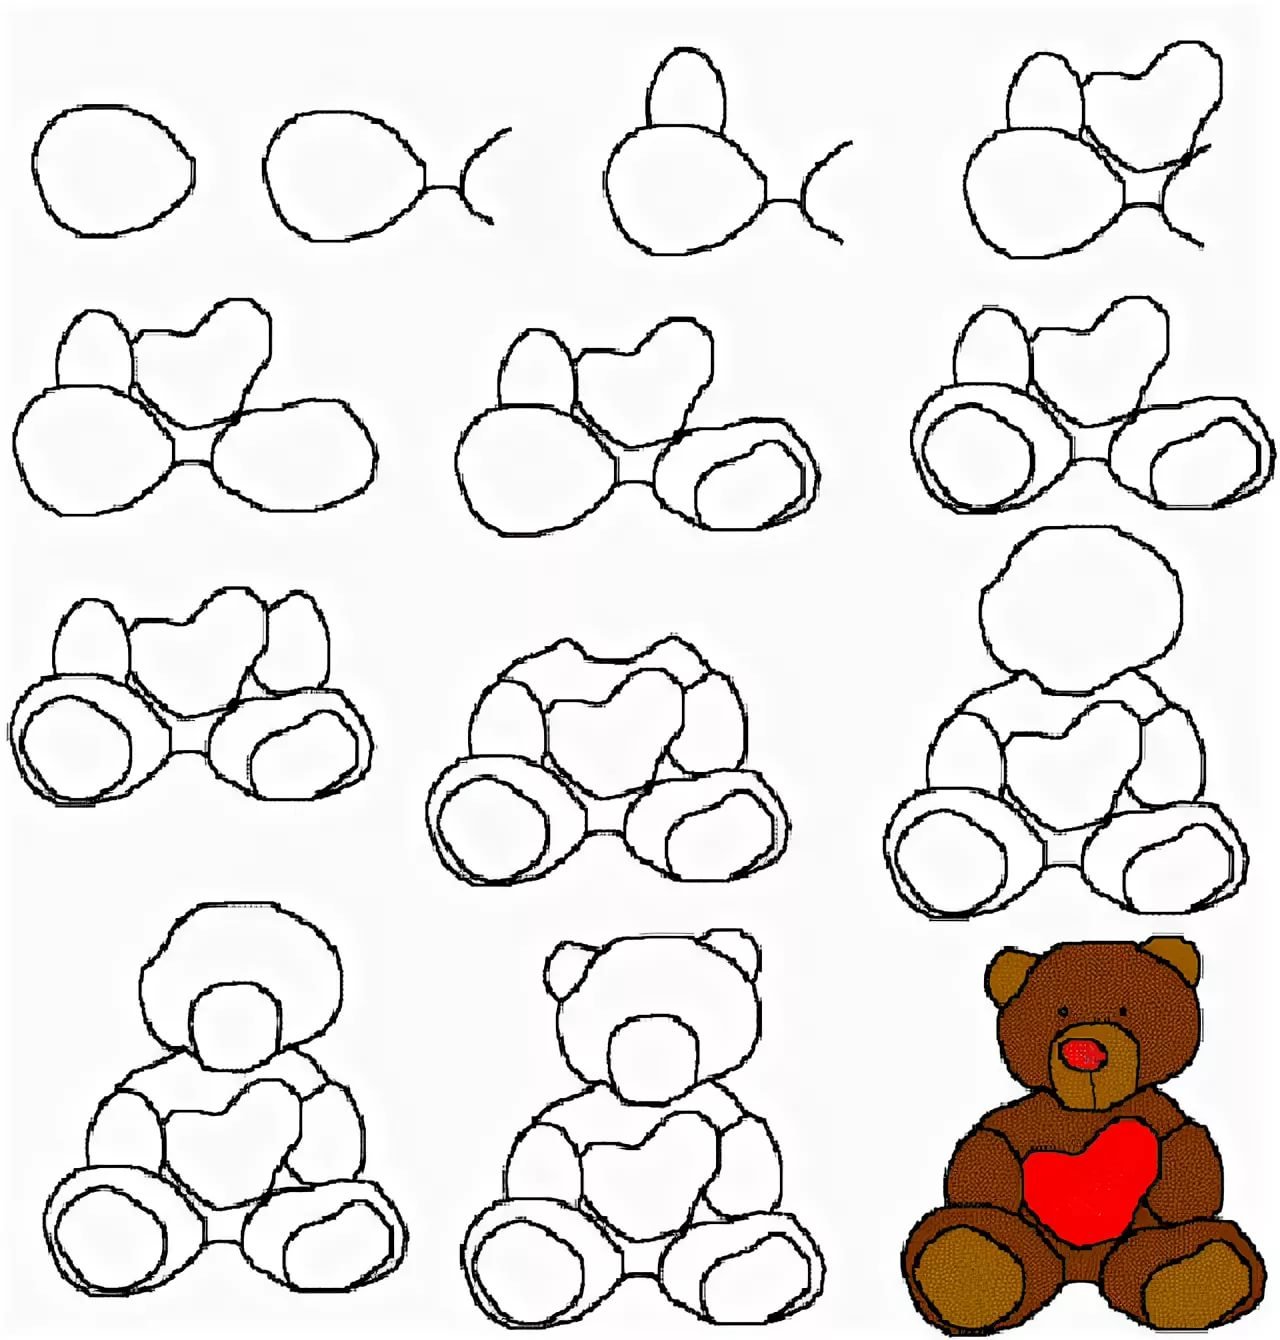 Поэтапное рисование медвежонка